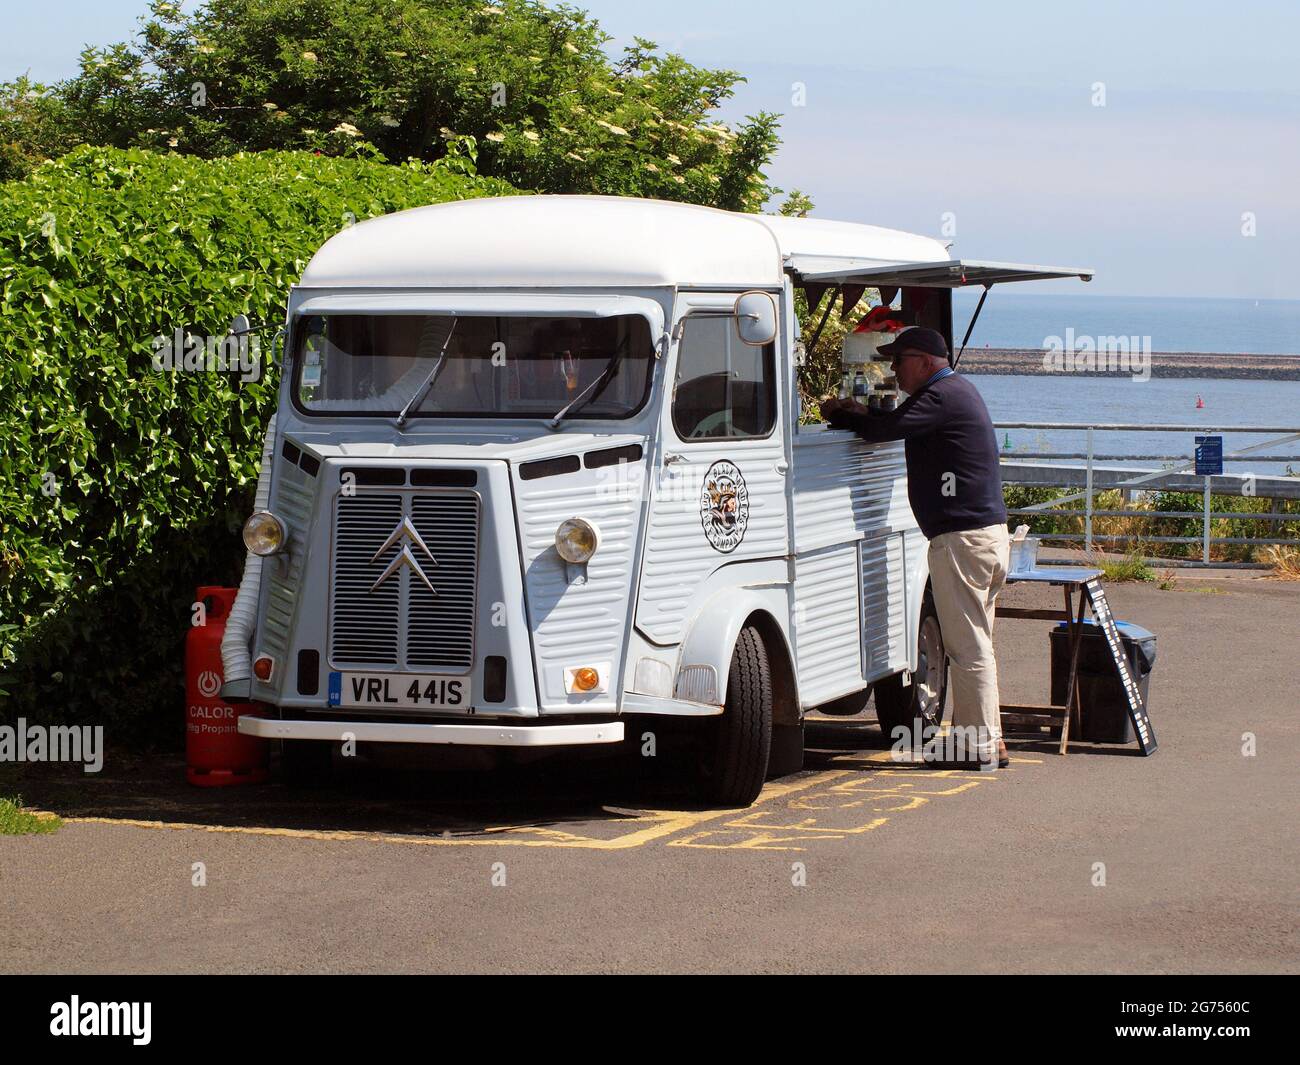 Un minibus commercial léger à quatre portes Citroën H.Y. d'époque qui vend des boissons chaudes et froides à un emplacement en bord de mer de Tynemouth au Royaume-Uni. Banque D'Images